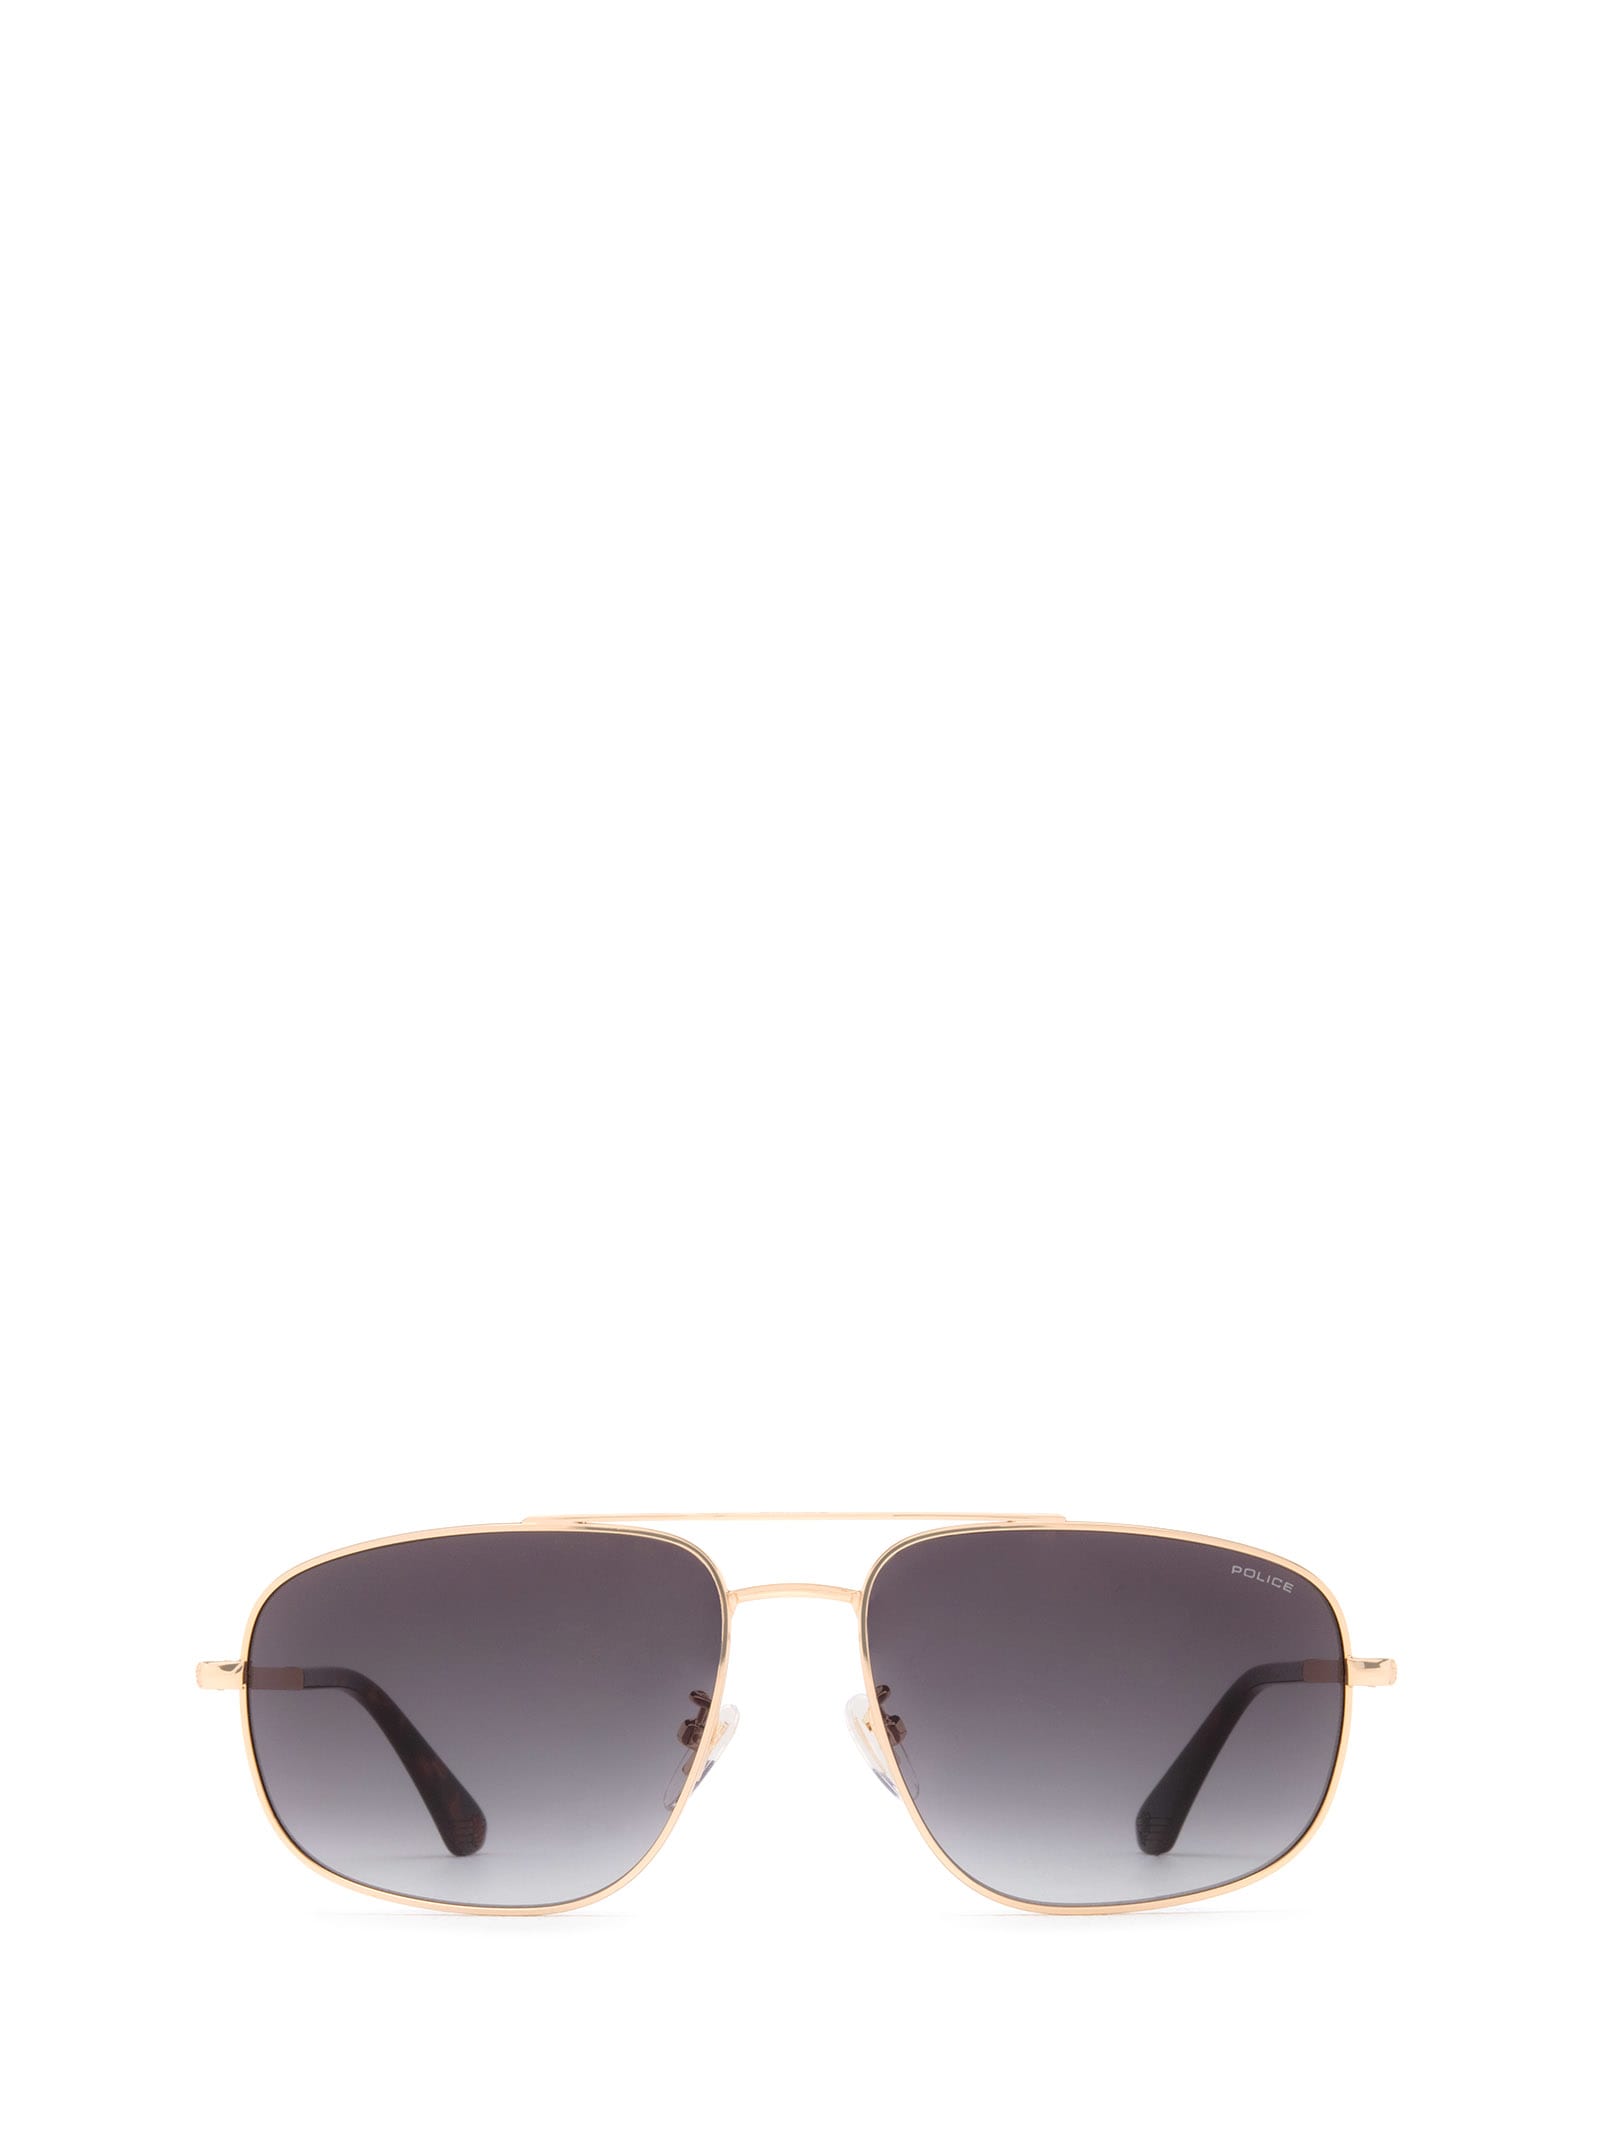 Sple04 Rose Gold Sunglasses